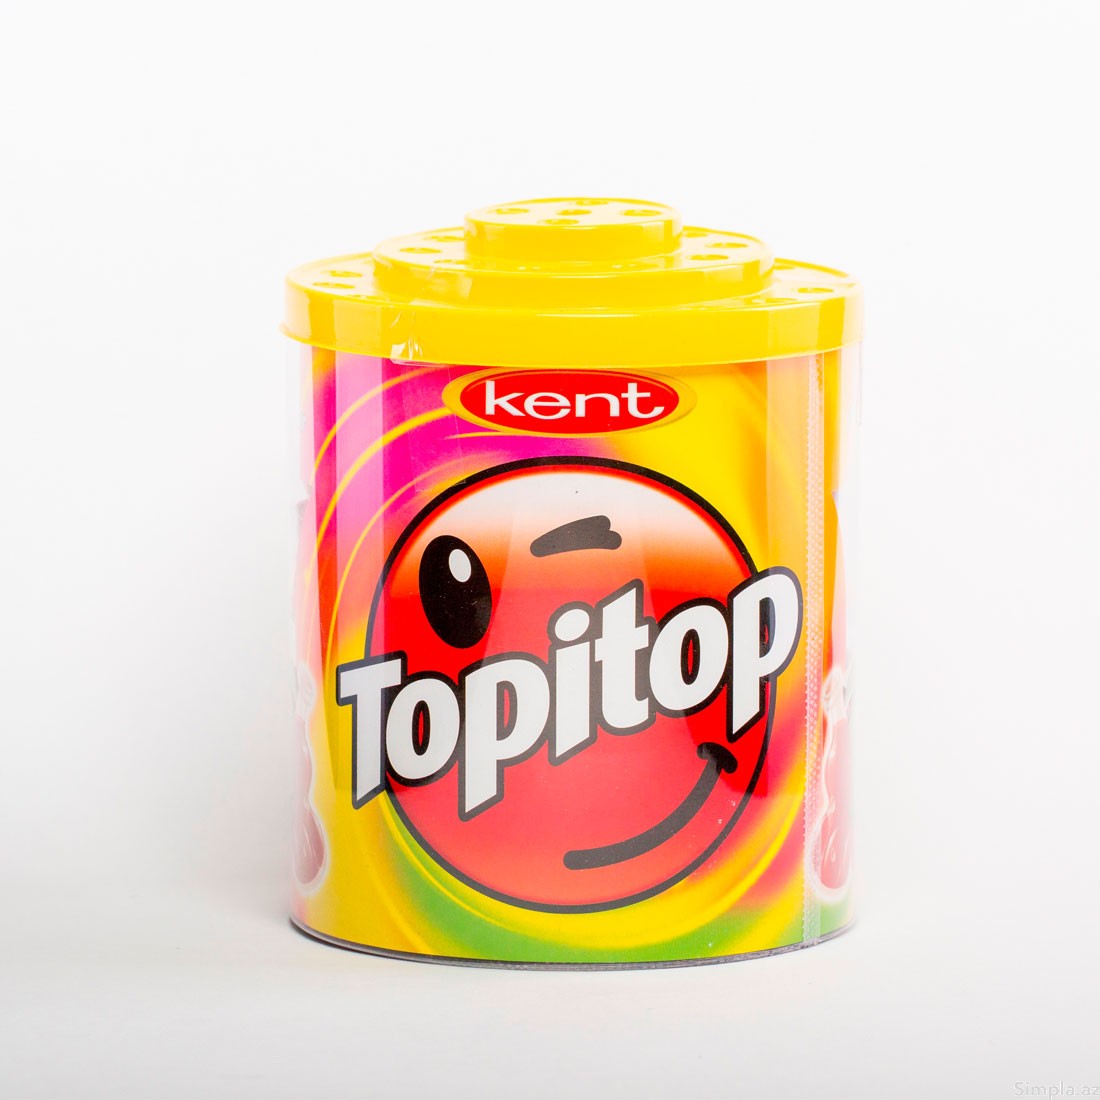 Kent Topitop 100 x 11 G